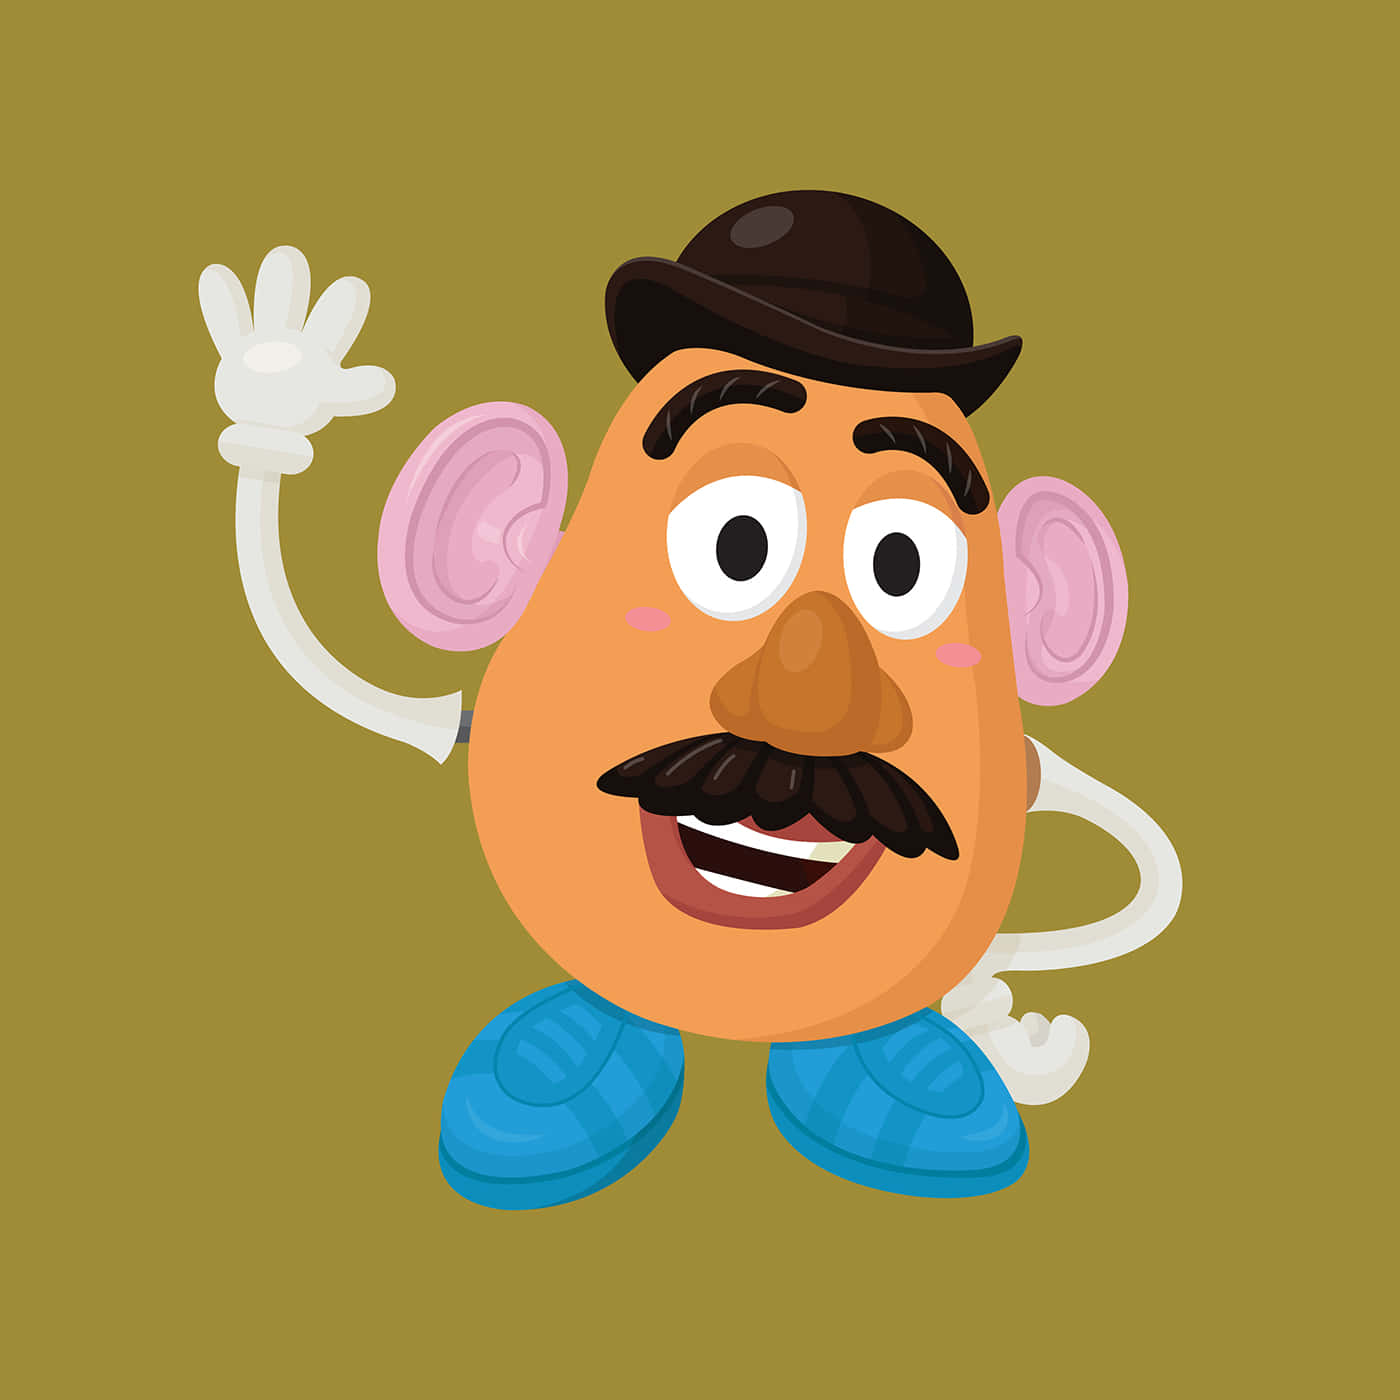 Imagende Mr. Potato Head Animado